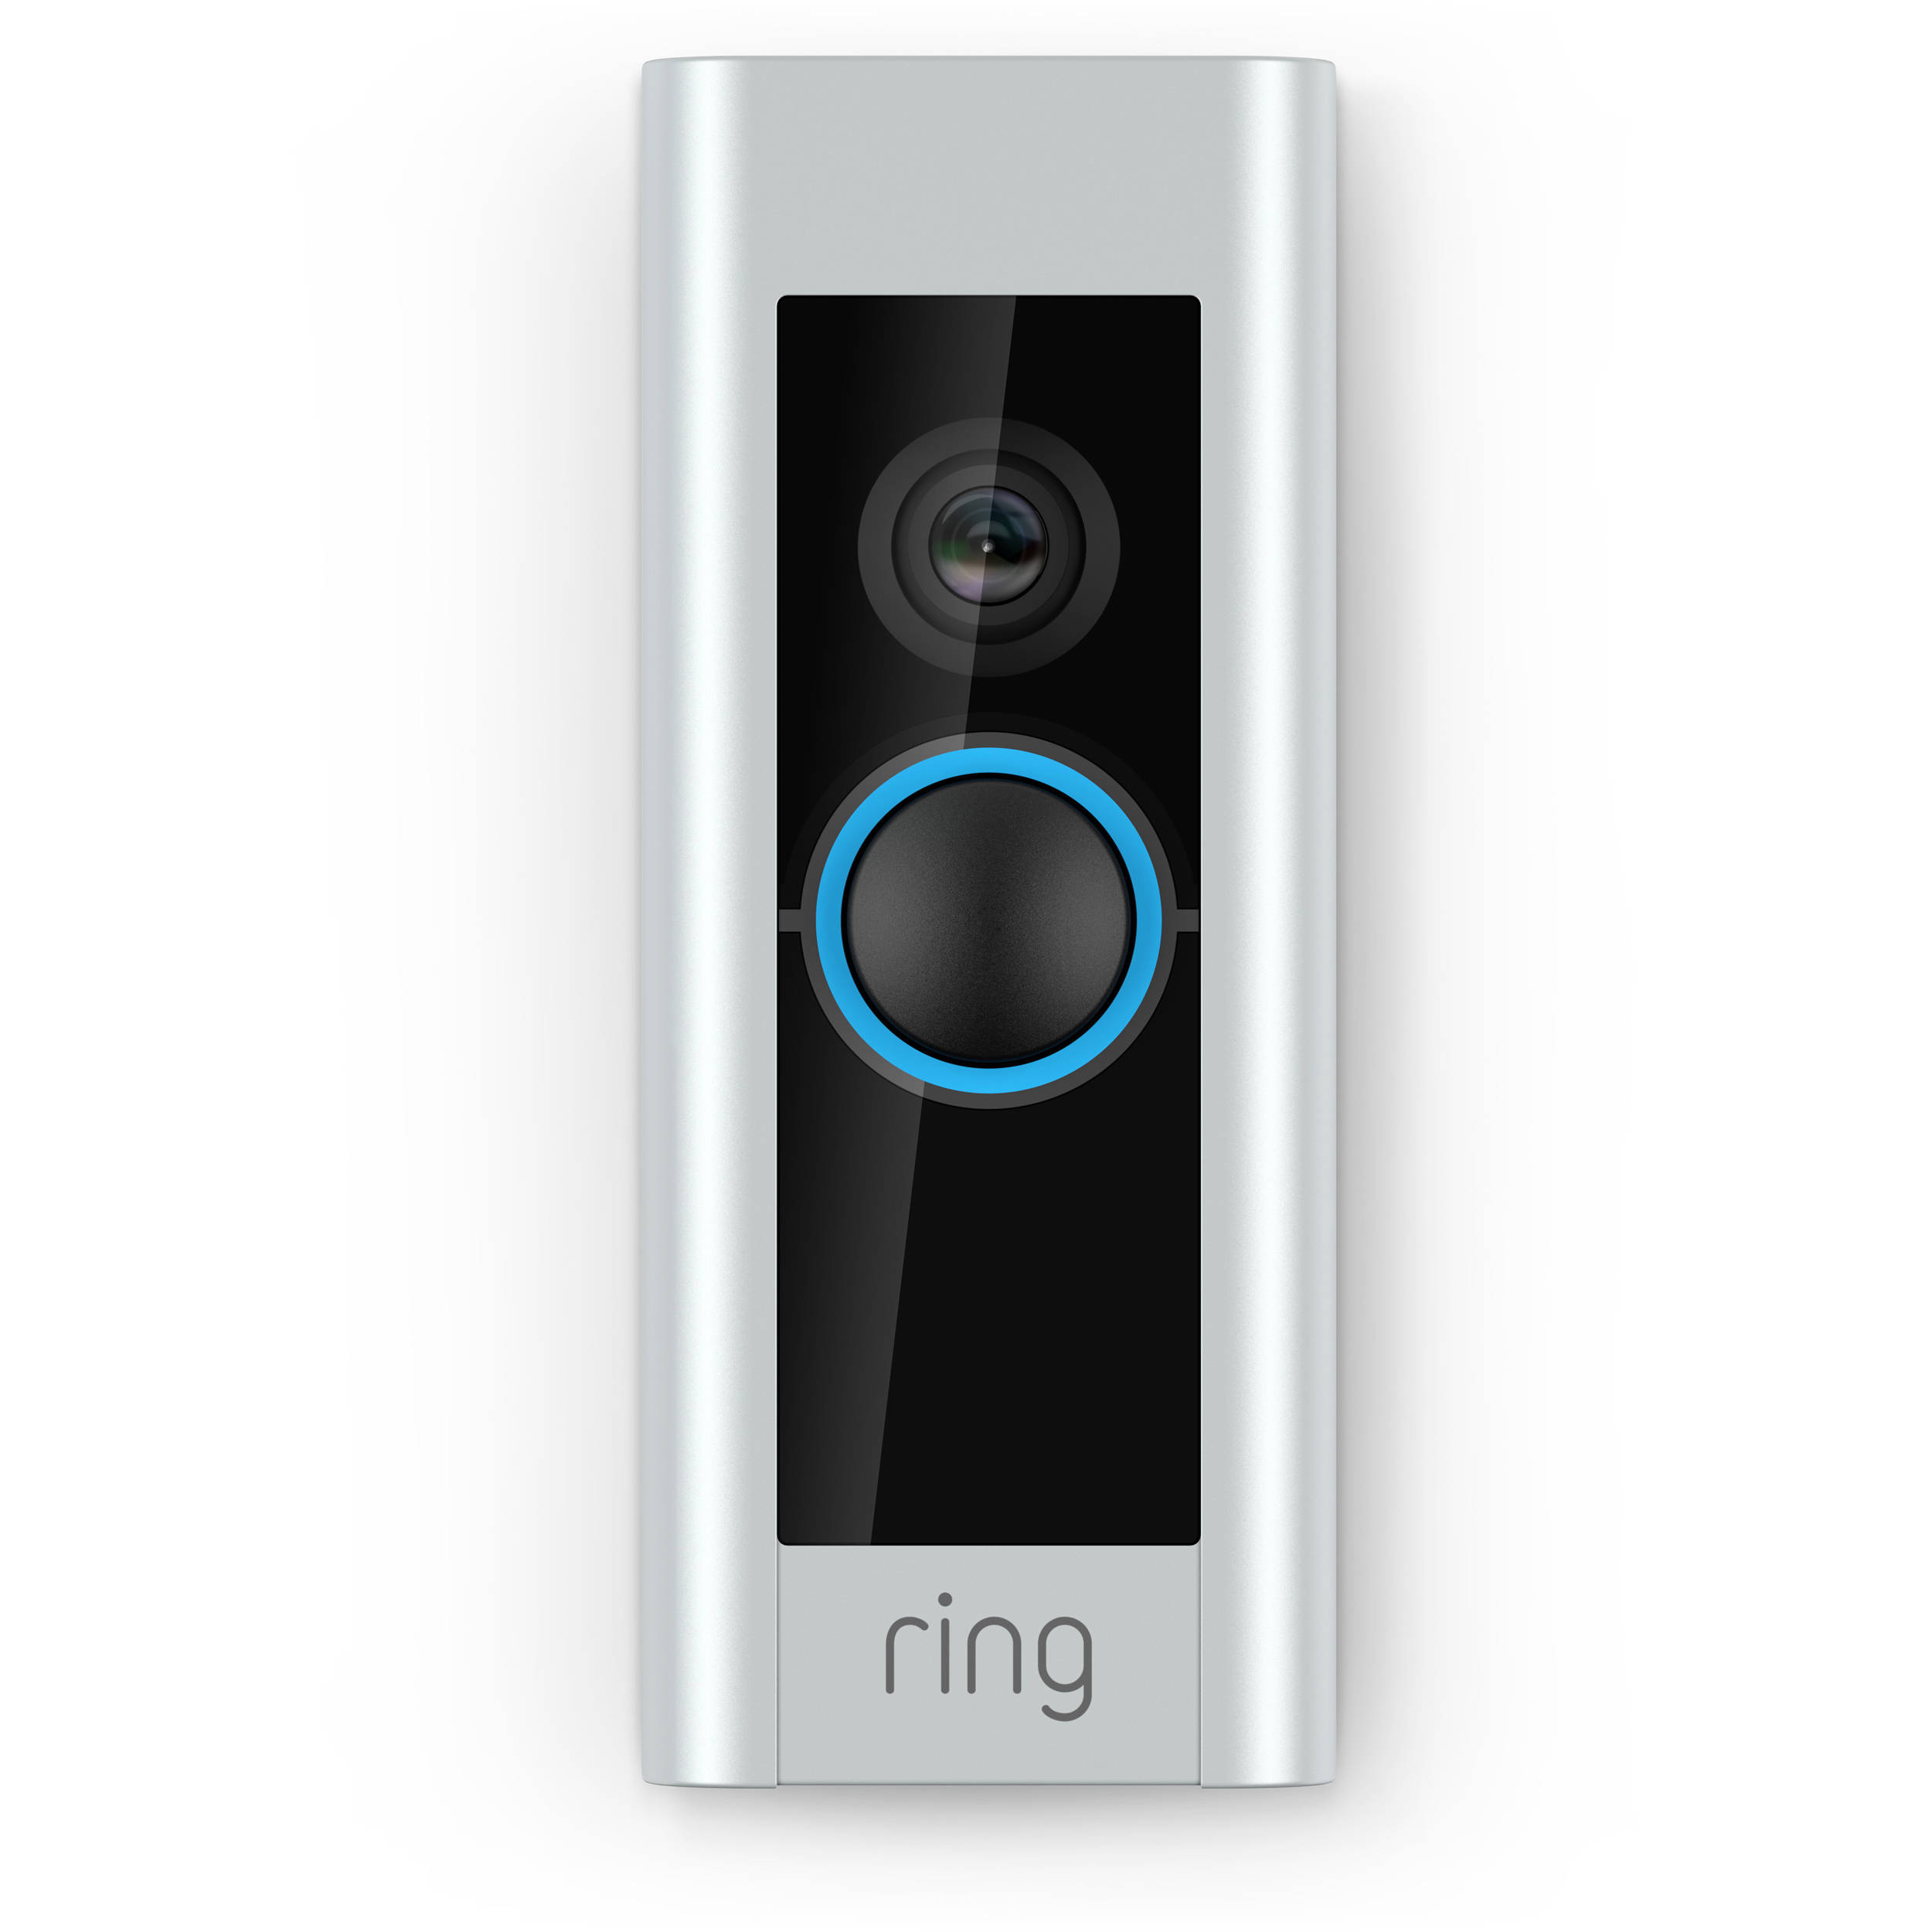 ring doorbell specials